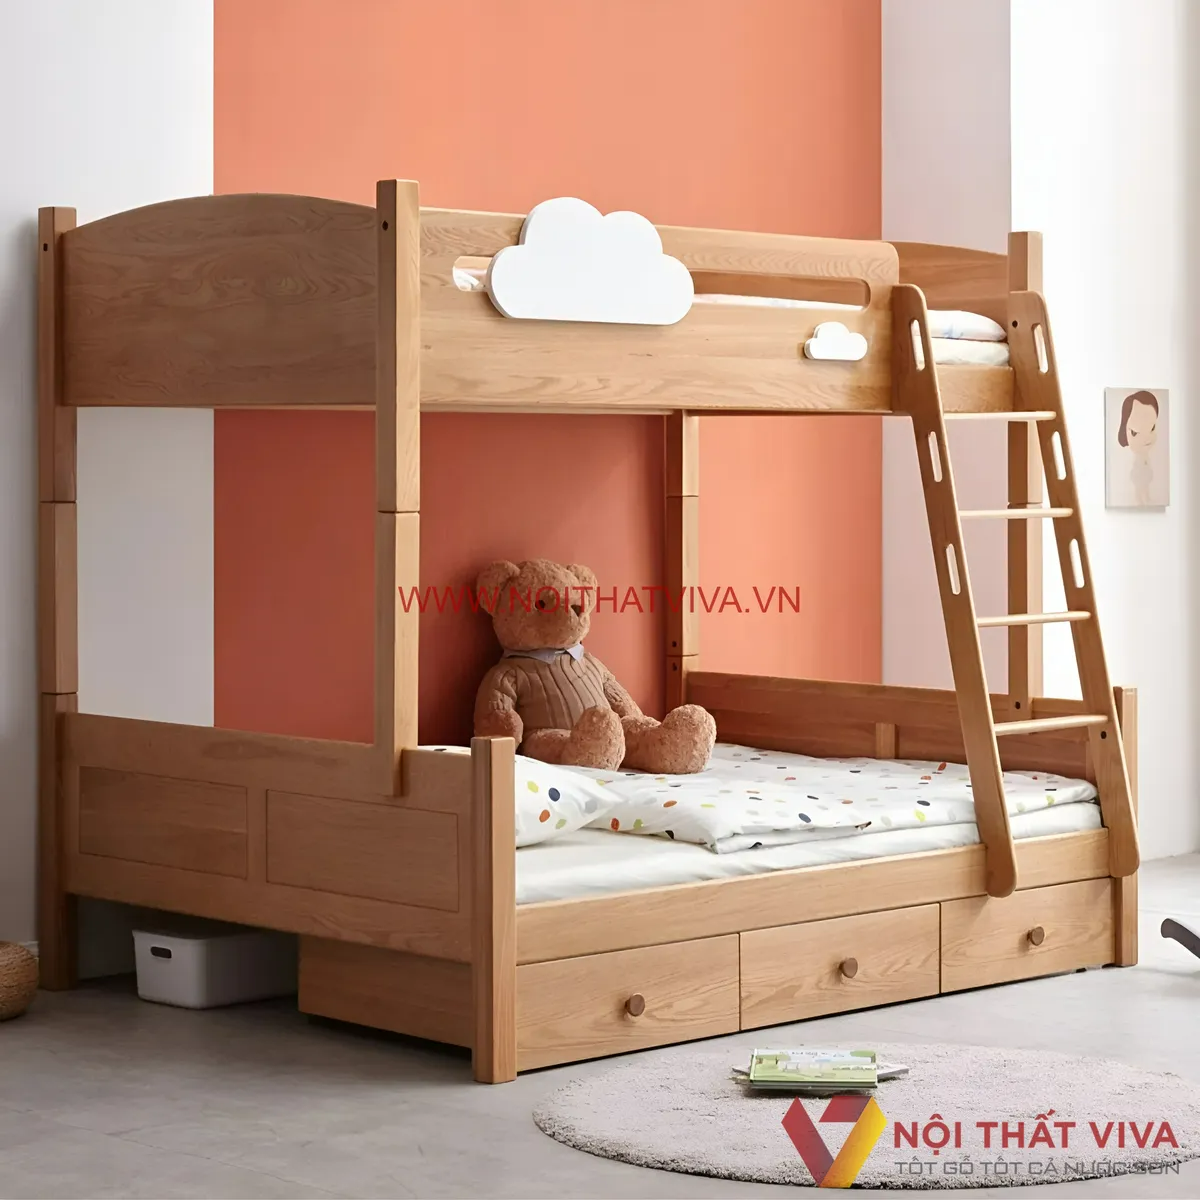 Khám phá 100+ mẫu thiết kế giường tầng trẻ em cao cấp cho phòng của con